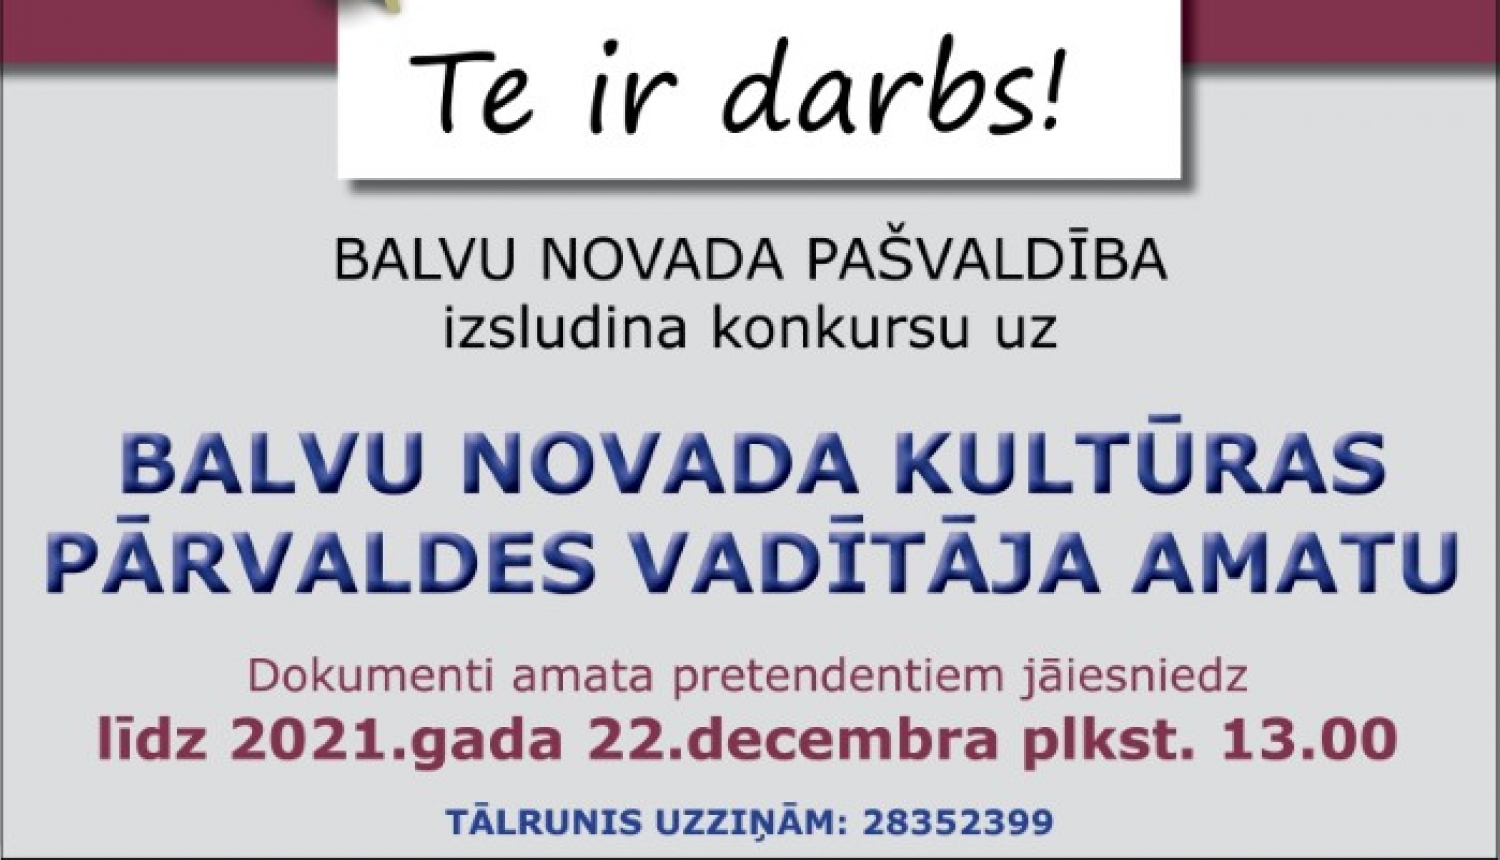 BALVU NOVADA PAŠVALDĪBA, Reģ.Nr.90009115622, izsludina konkursu uz Balvu novada Kultūras pārvaldes vadītāja amatu uz nenoteiktu laiku (profesijas kods 1112 36)